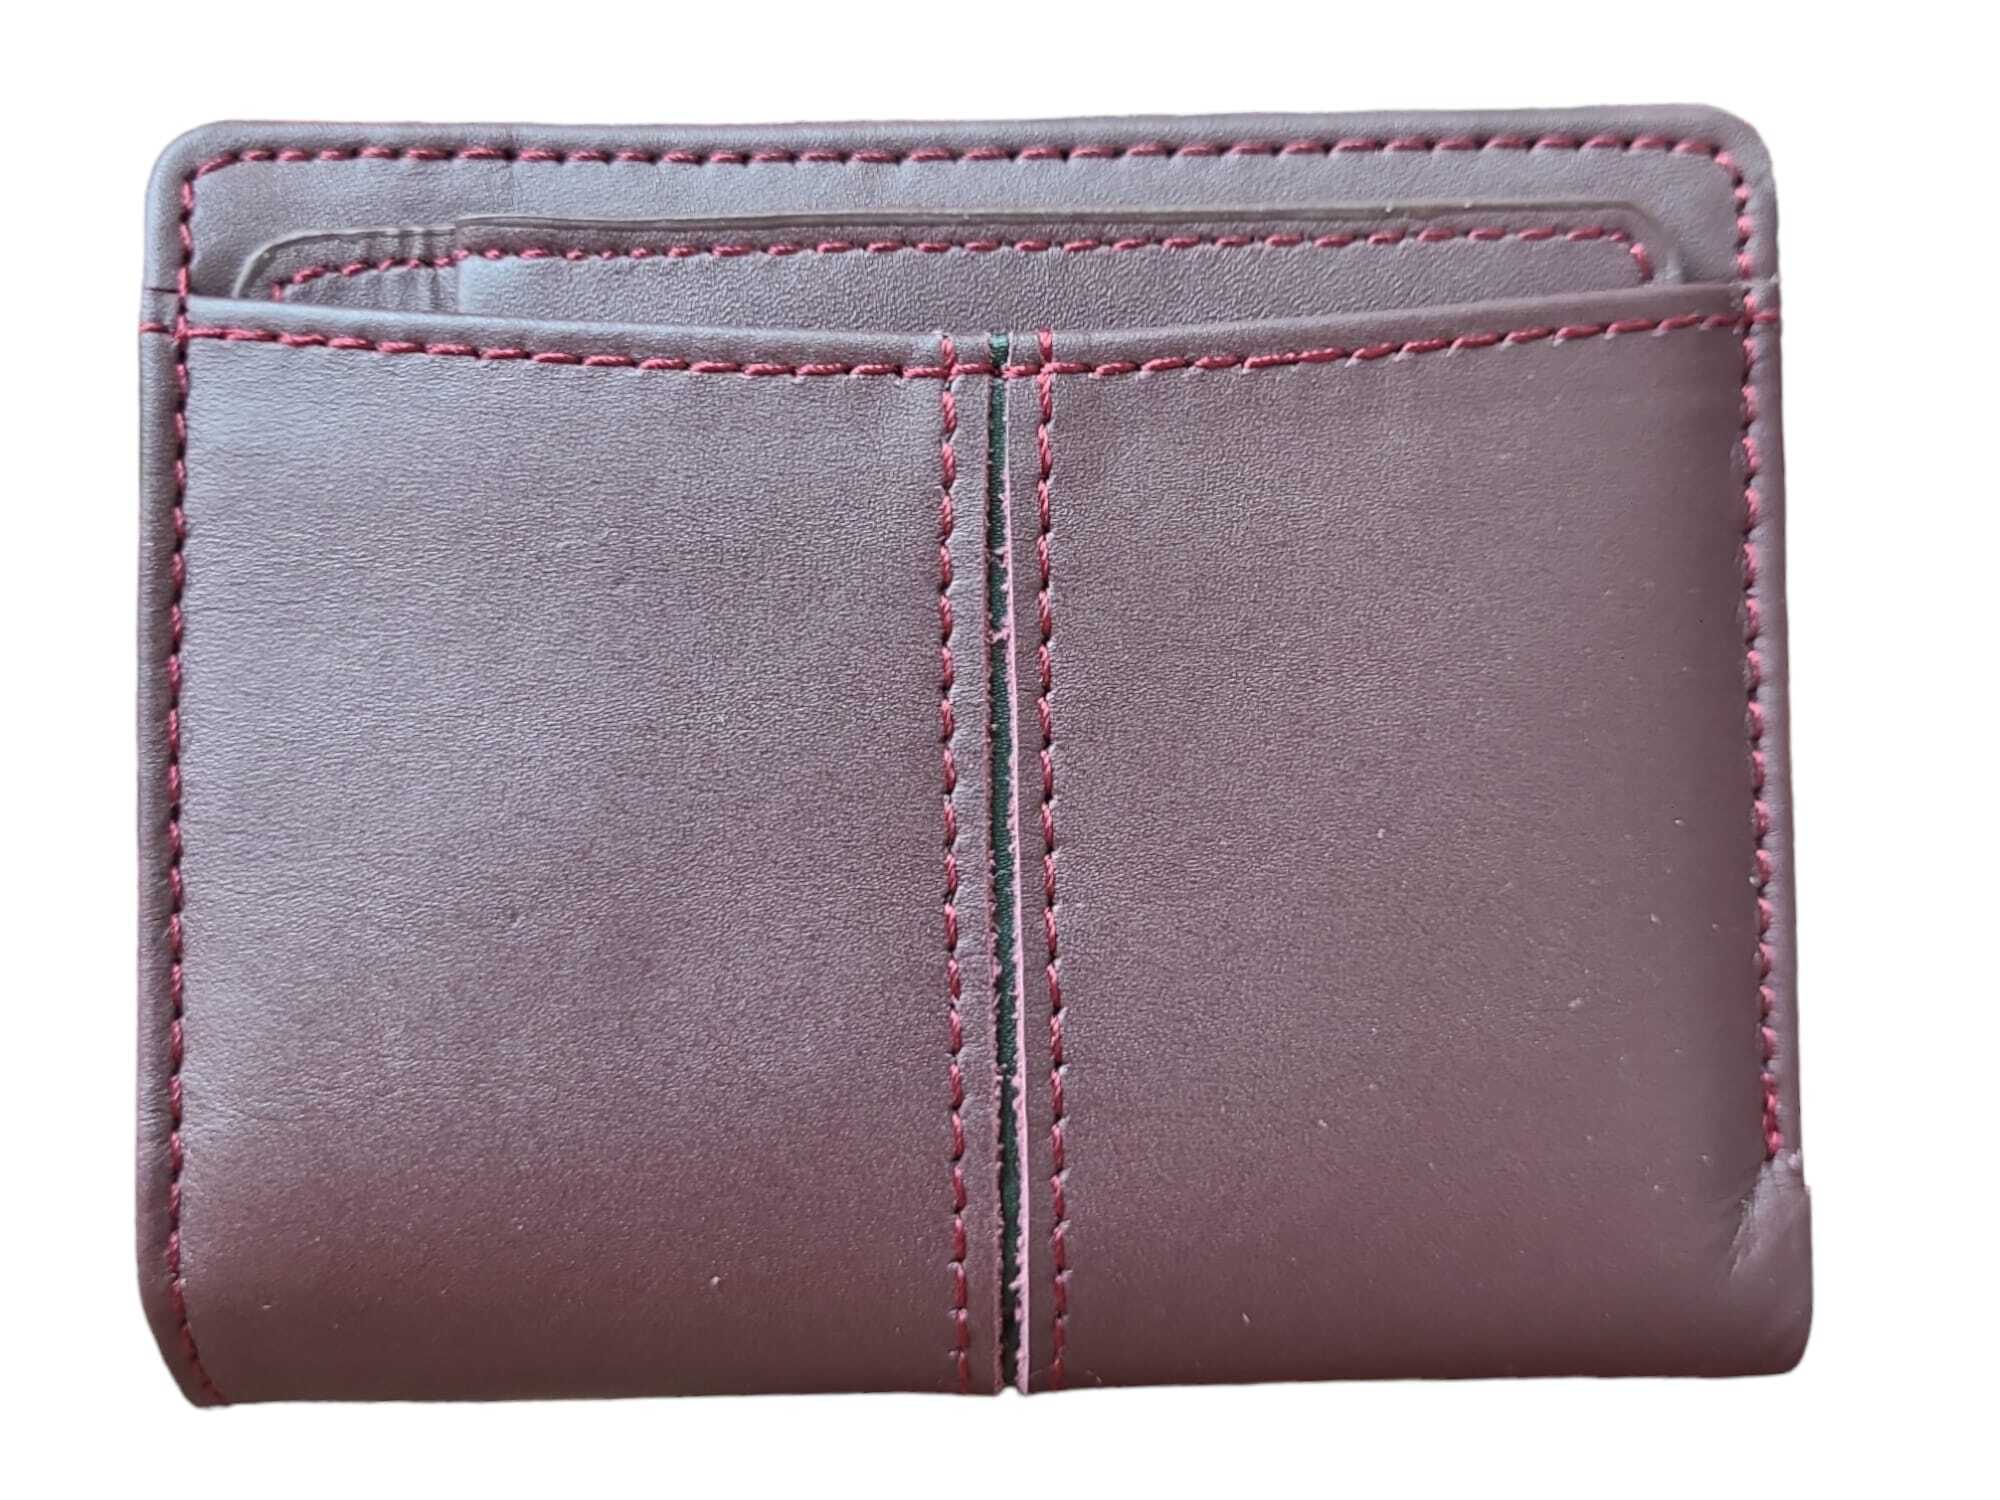 Ladies Leather Wallet 20855 – Sreeleathers Ltd